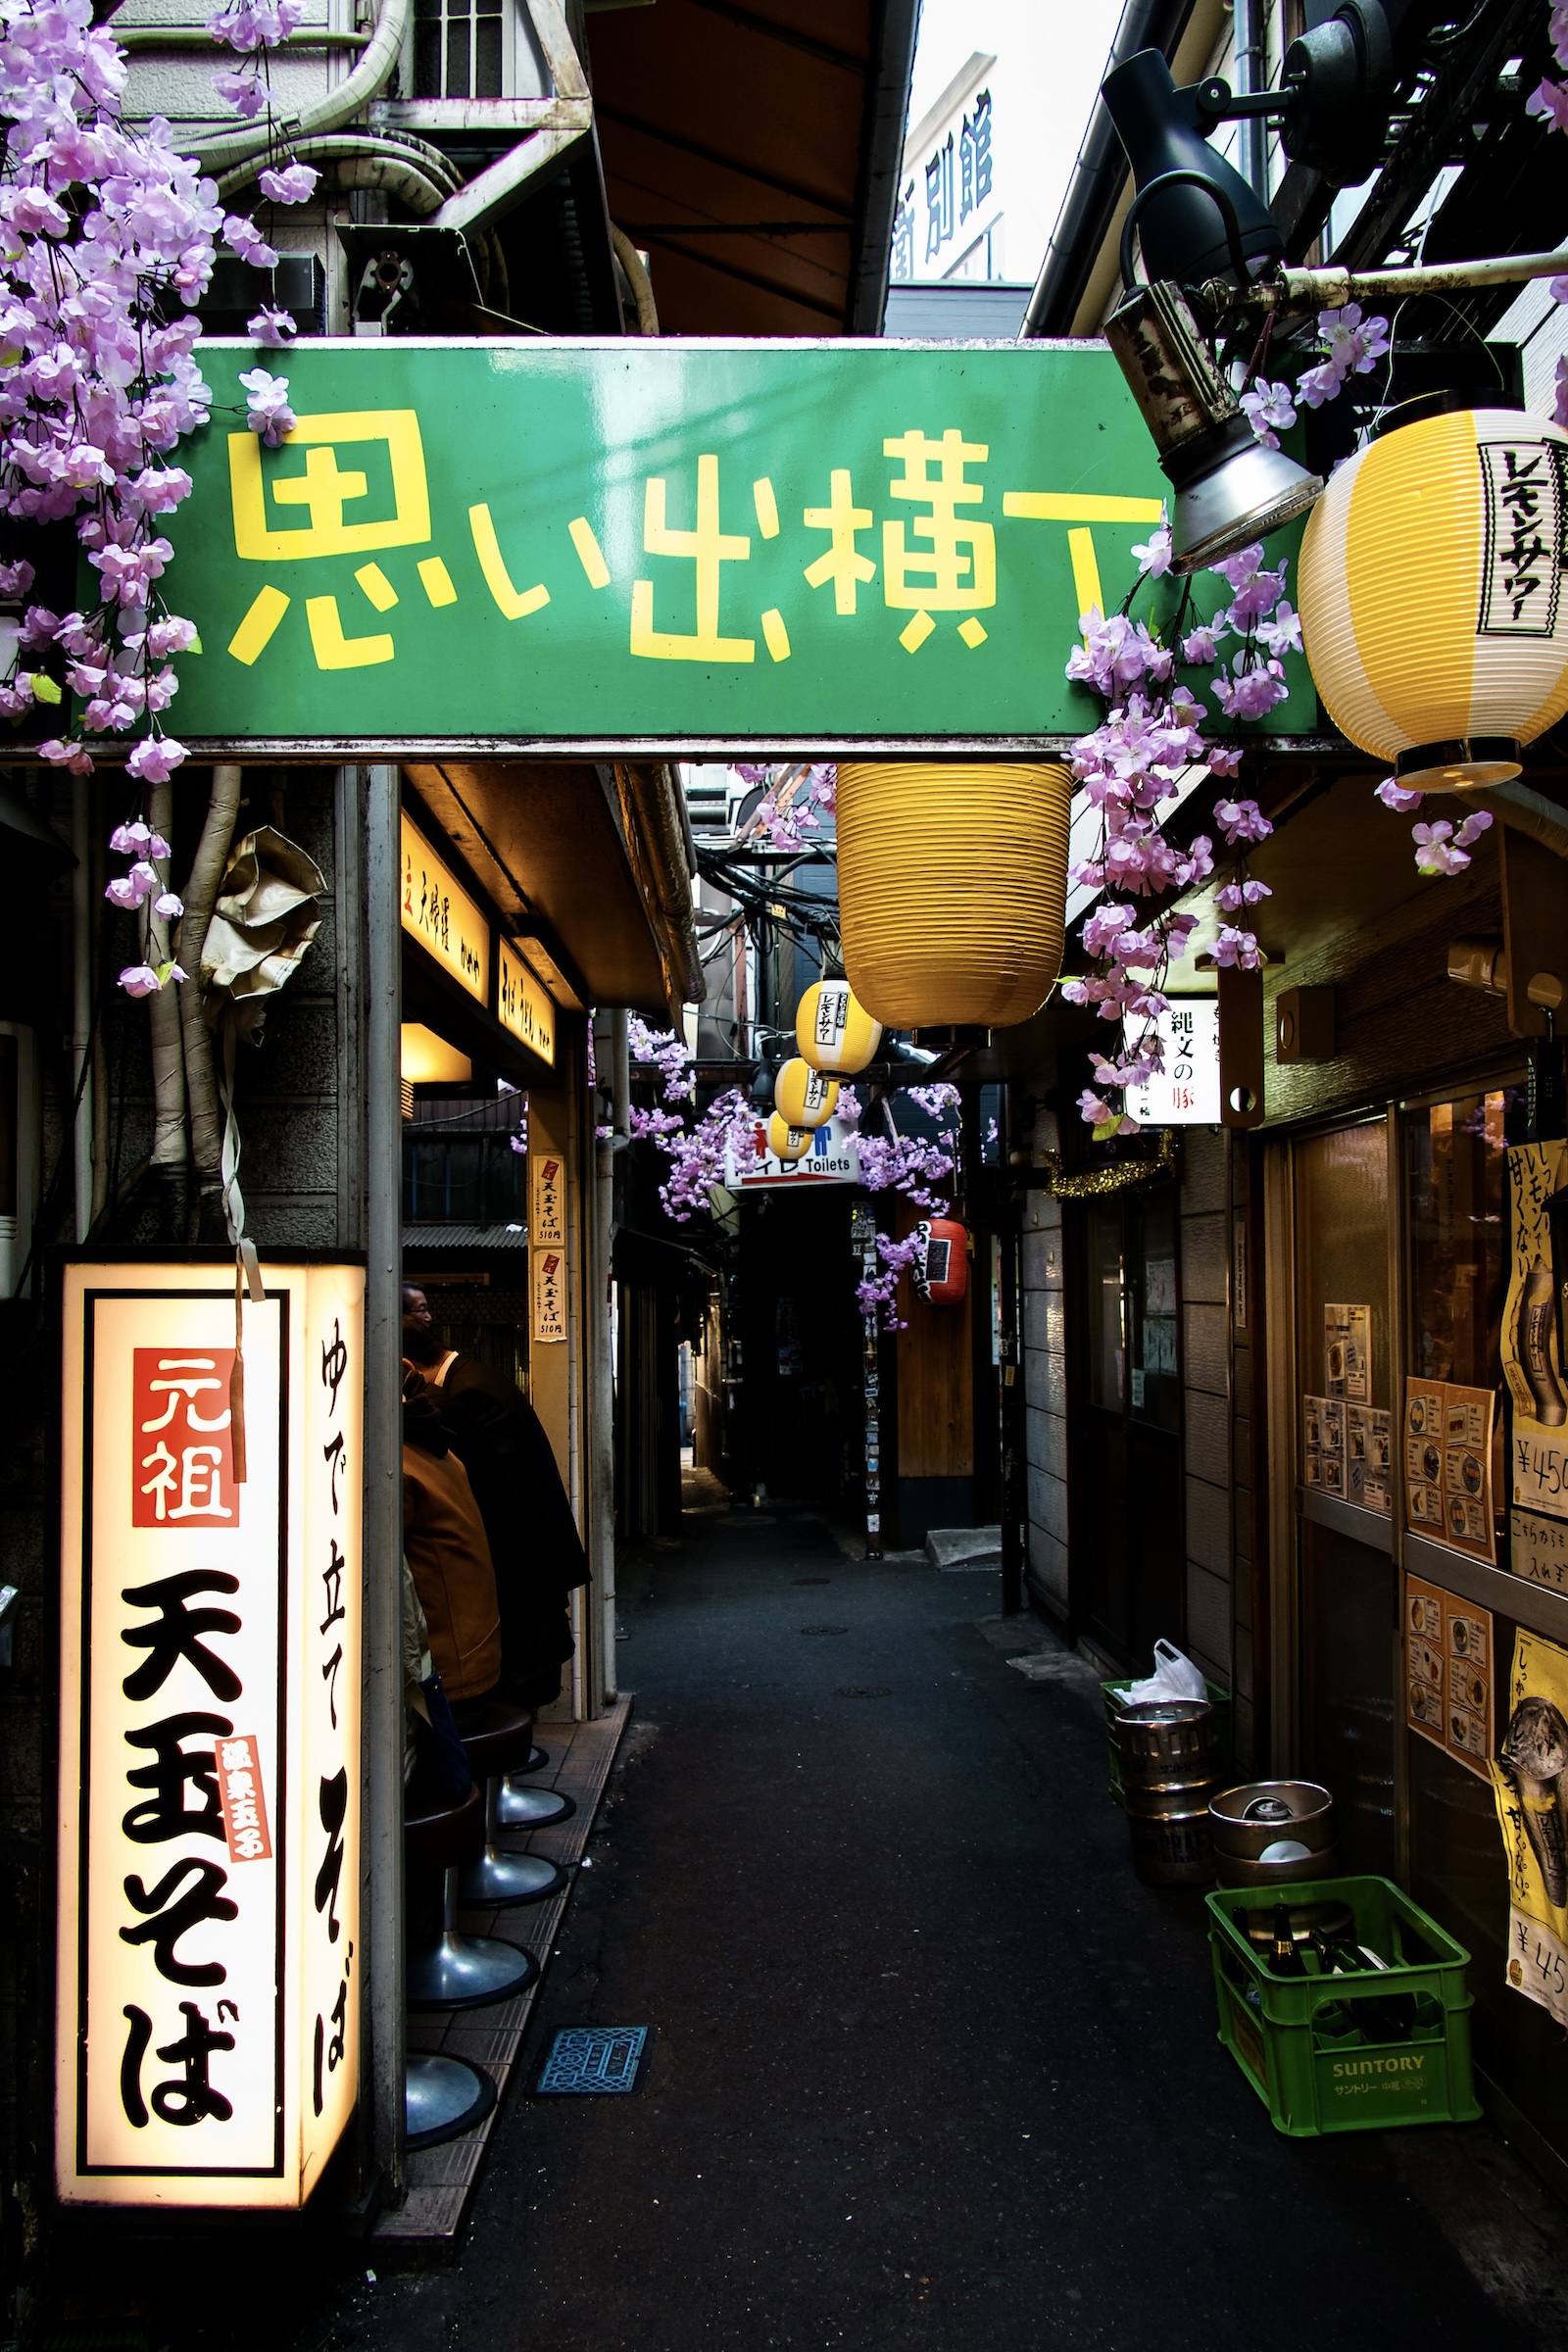 Omoide Yokocho alleyway